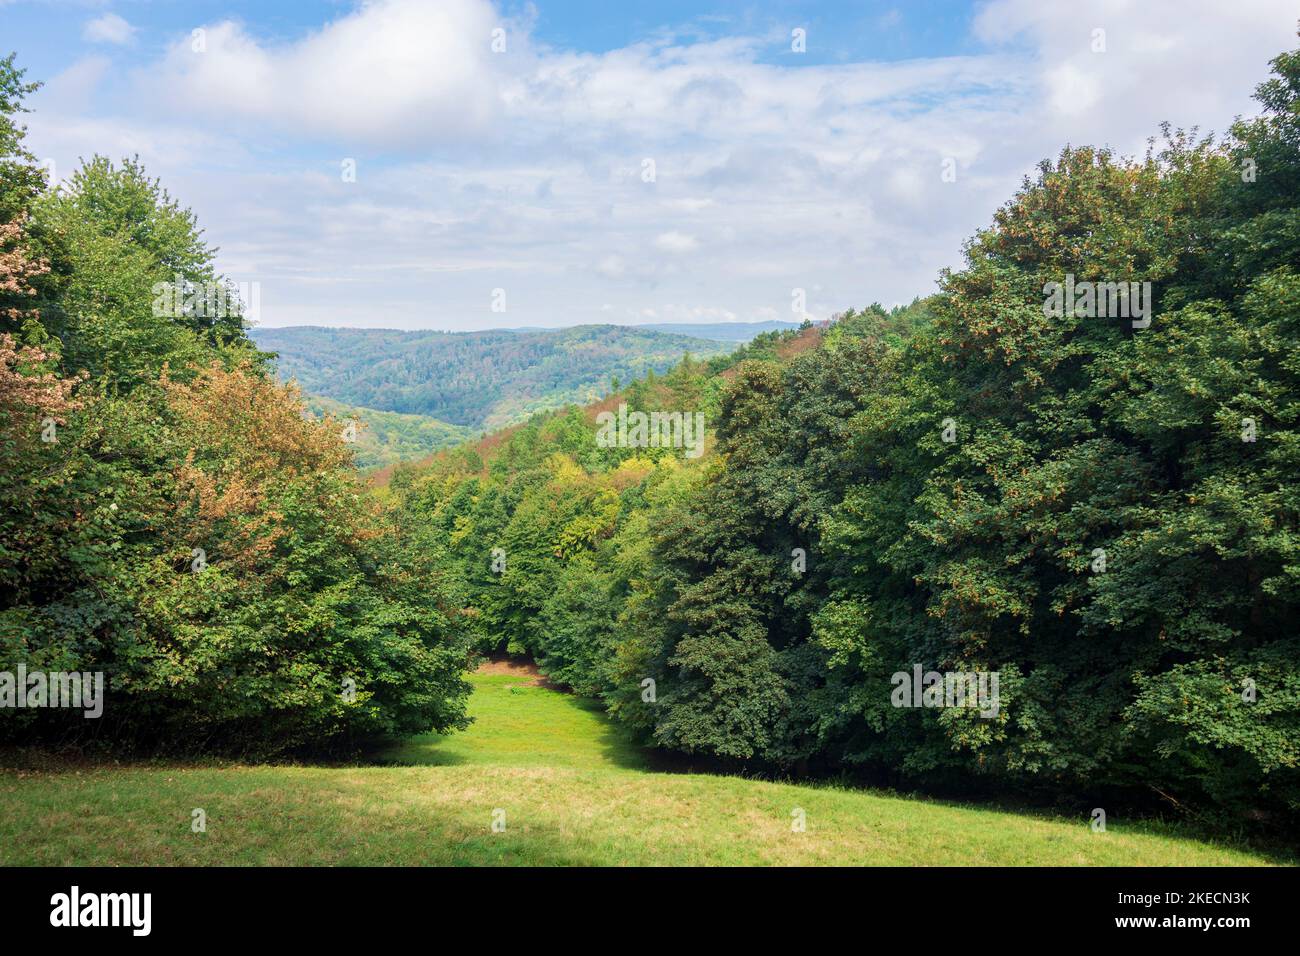 Bratislava (Pressburg), forest in Bratislavsky lesny park in Male Karpaty (Little Carpathians), Slovakia Stock Photo